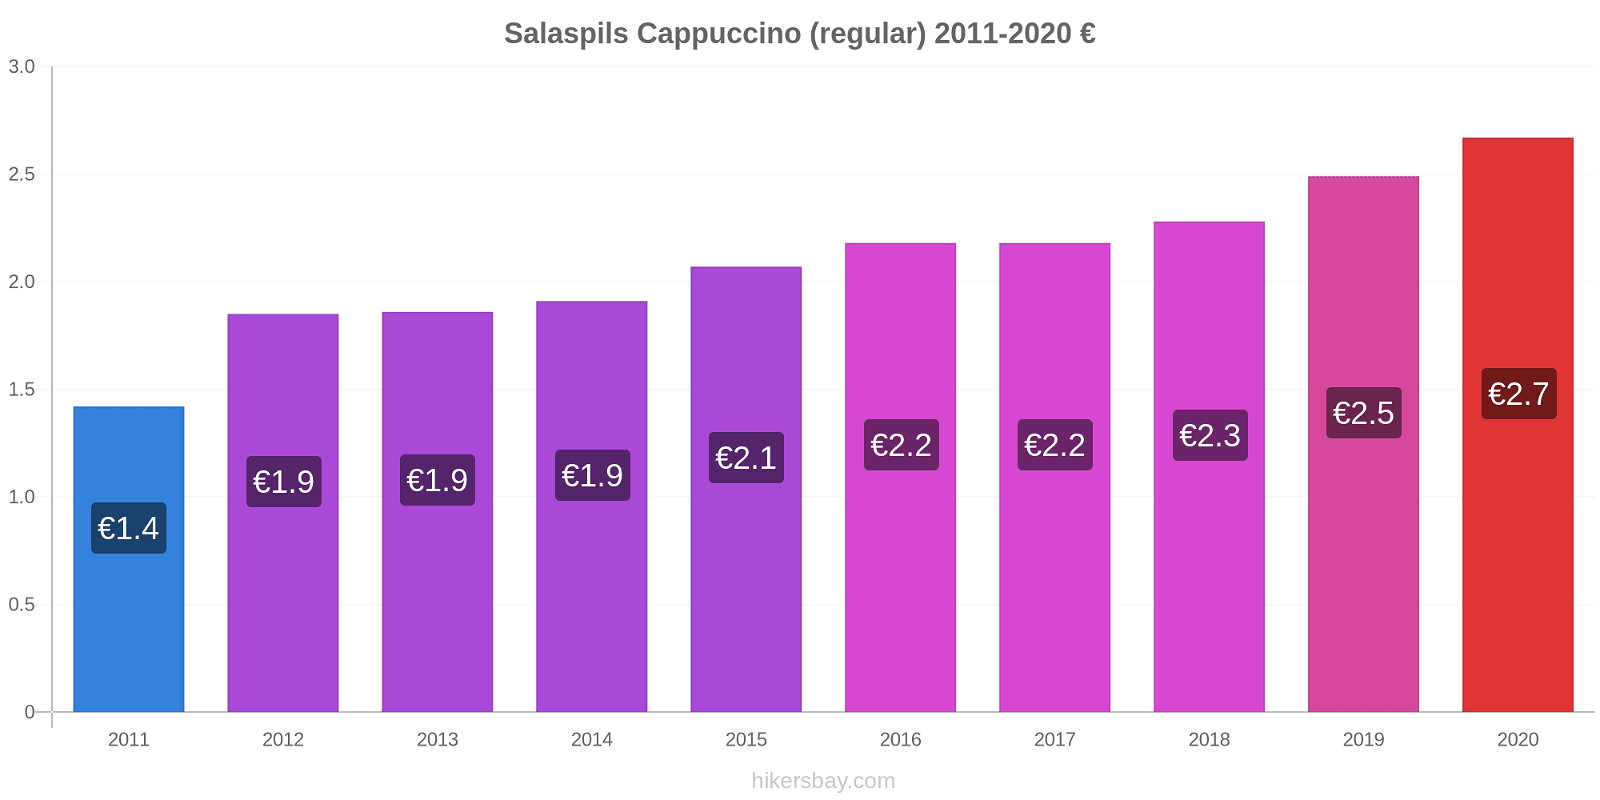 Salaspils variação de preço Capuccino (regular) hikersbay.com